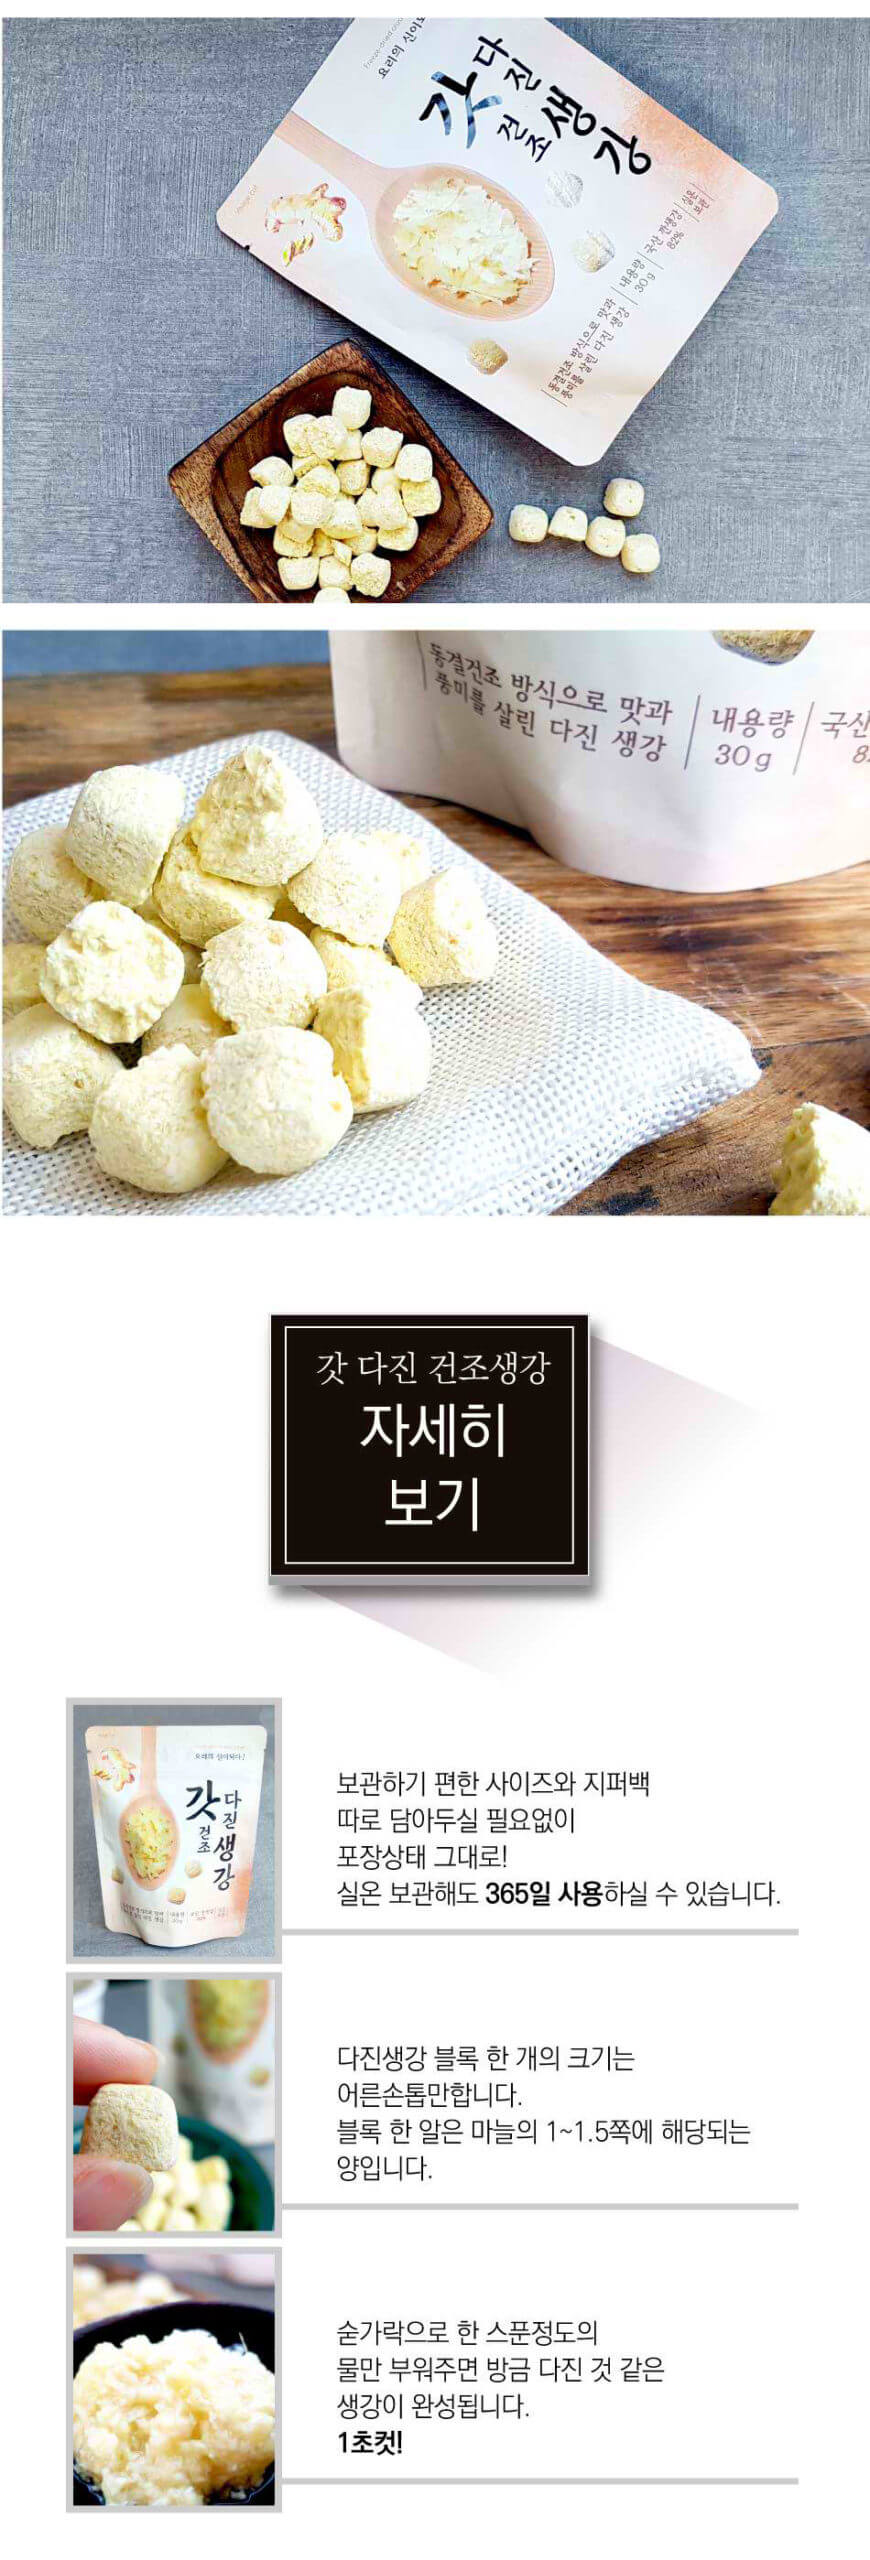 韓國食品-[Fnd] Dried Ginger Cube 30g